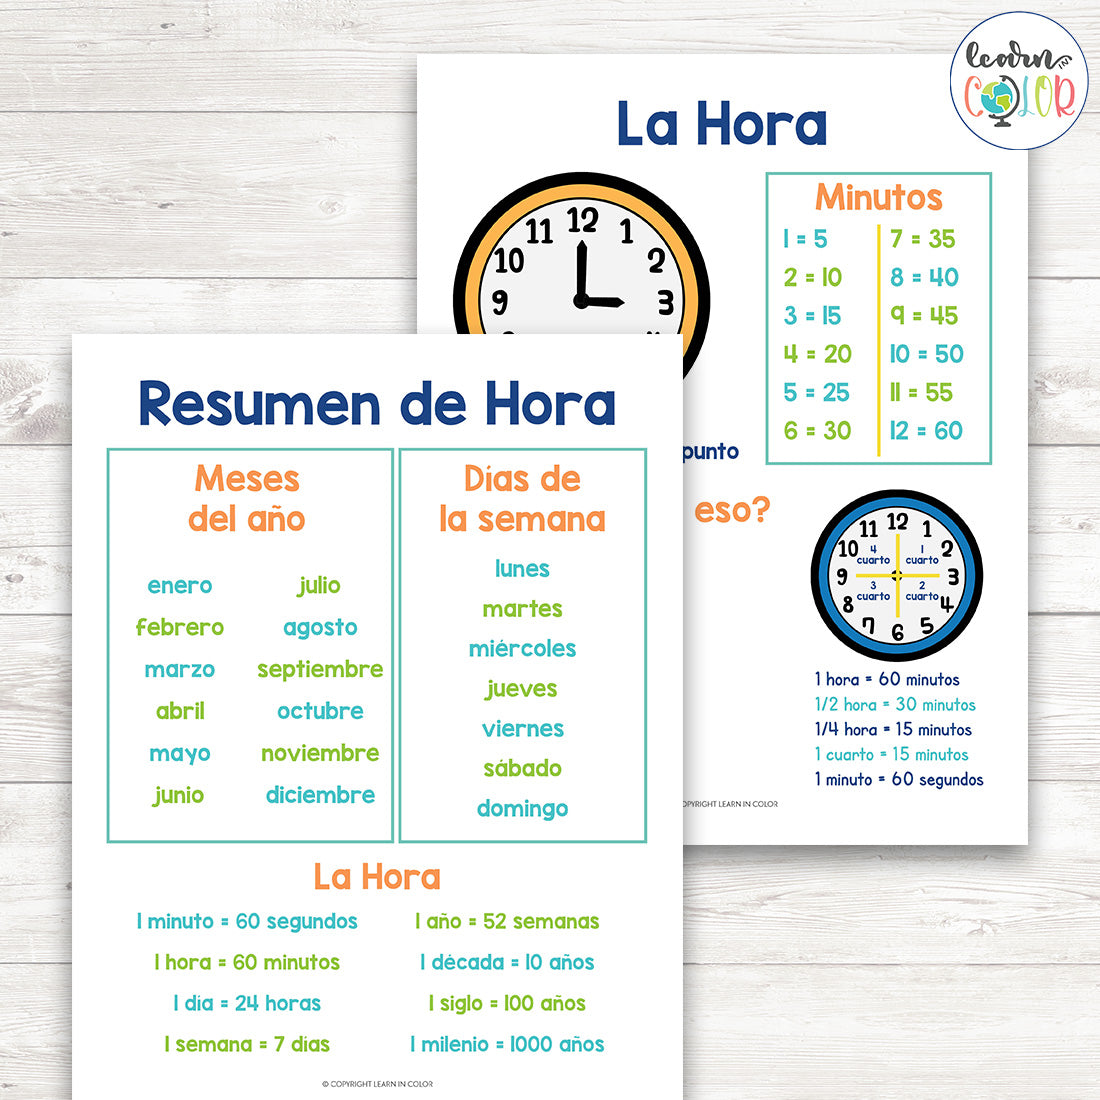 Las Hojas De Trucos Para Hora | Time Cheat Sheets in Spanish